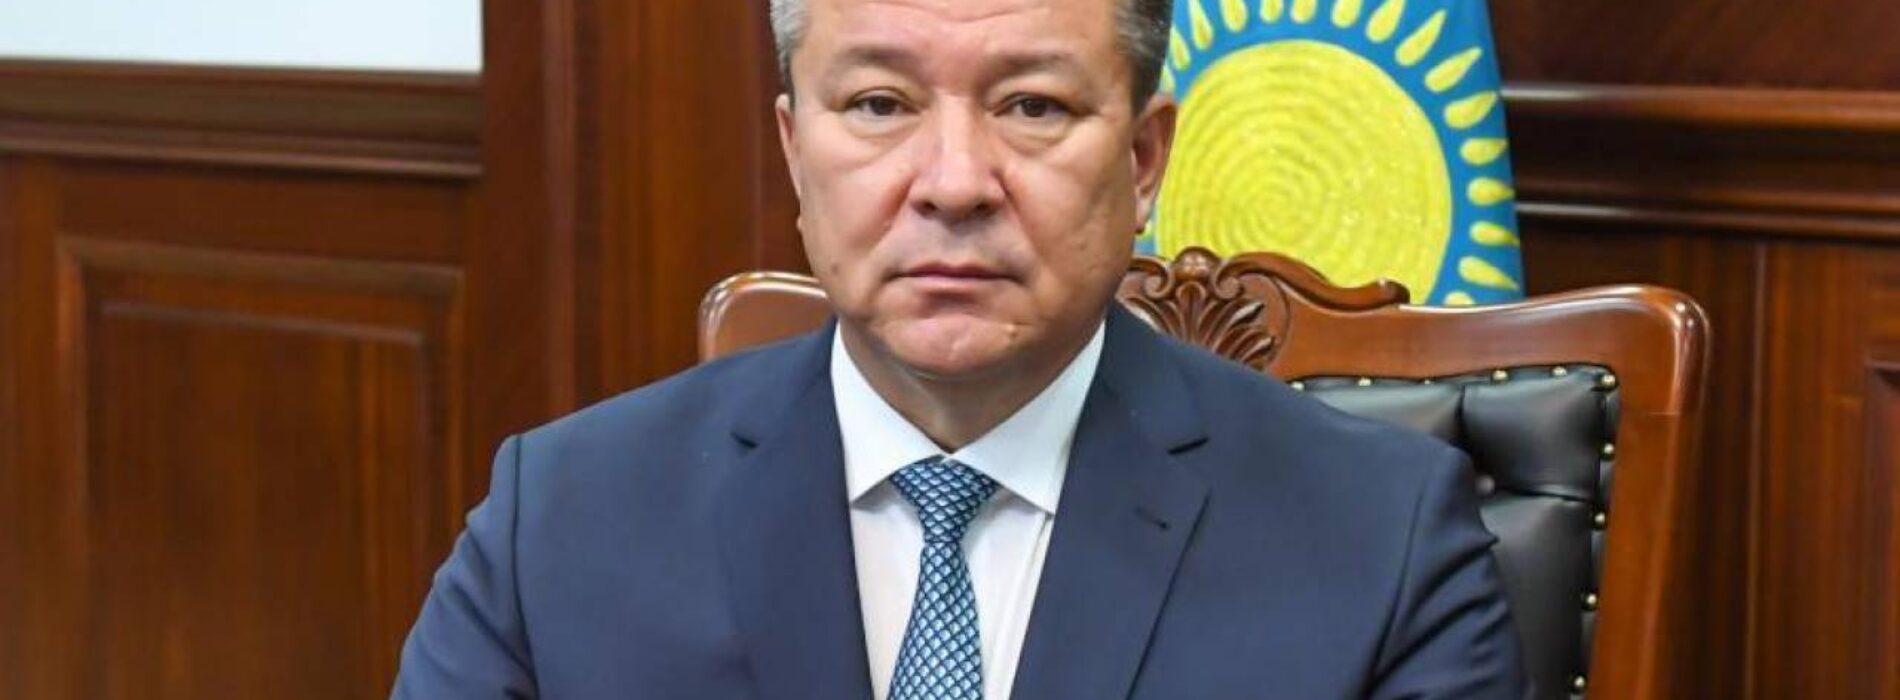 Суд вынес приговор экс-акиму Кызылординской области Искакову